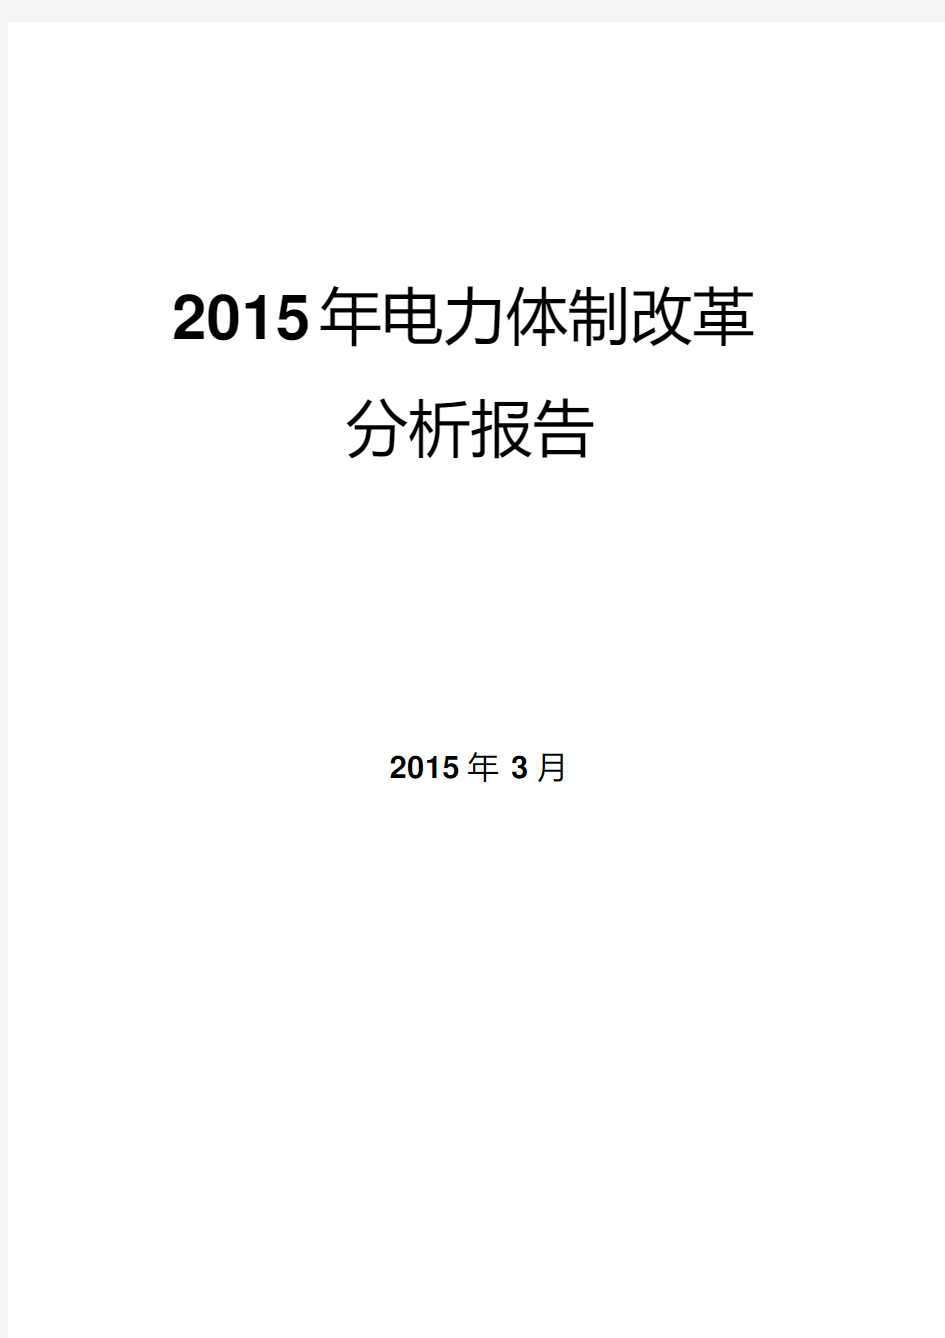 2015年电力体制改革分析报告